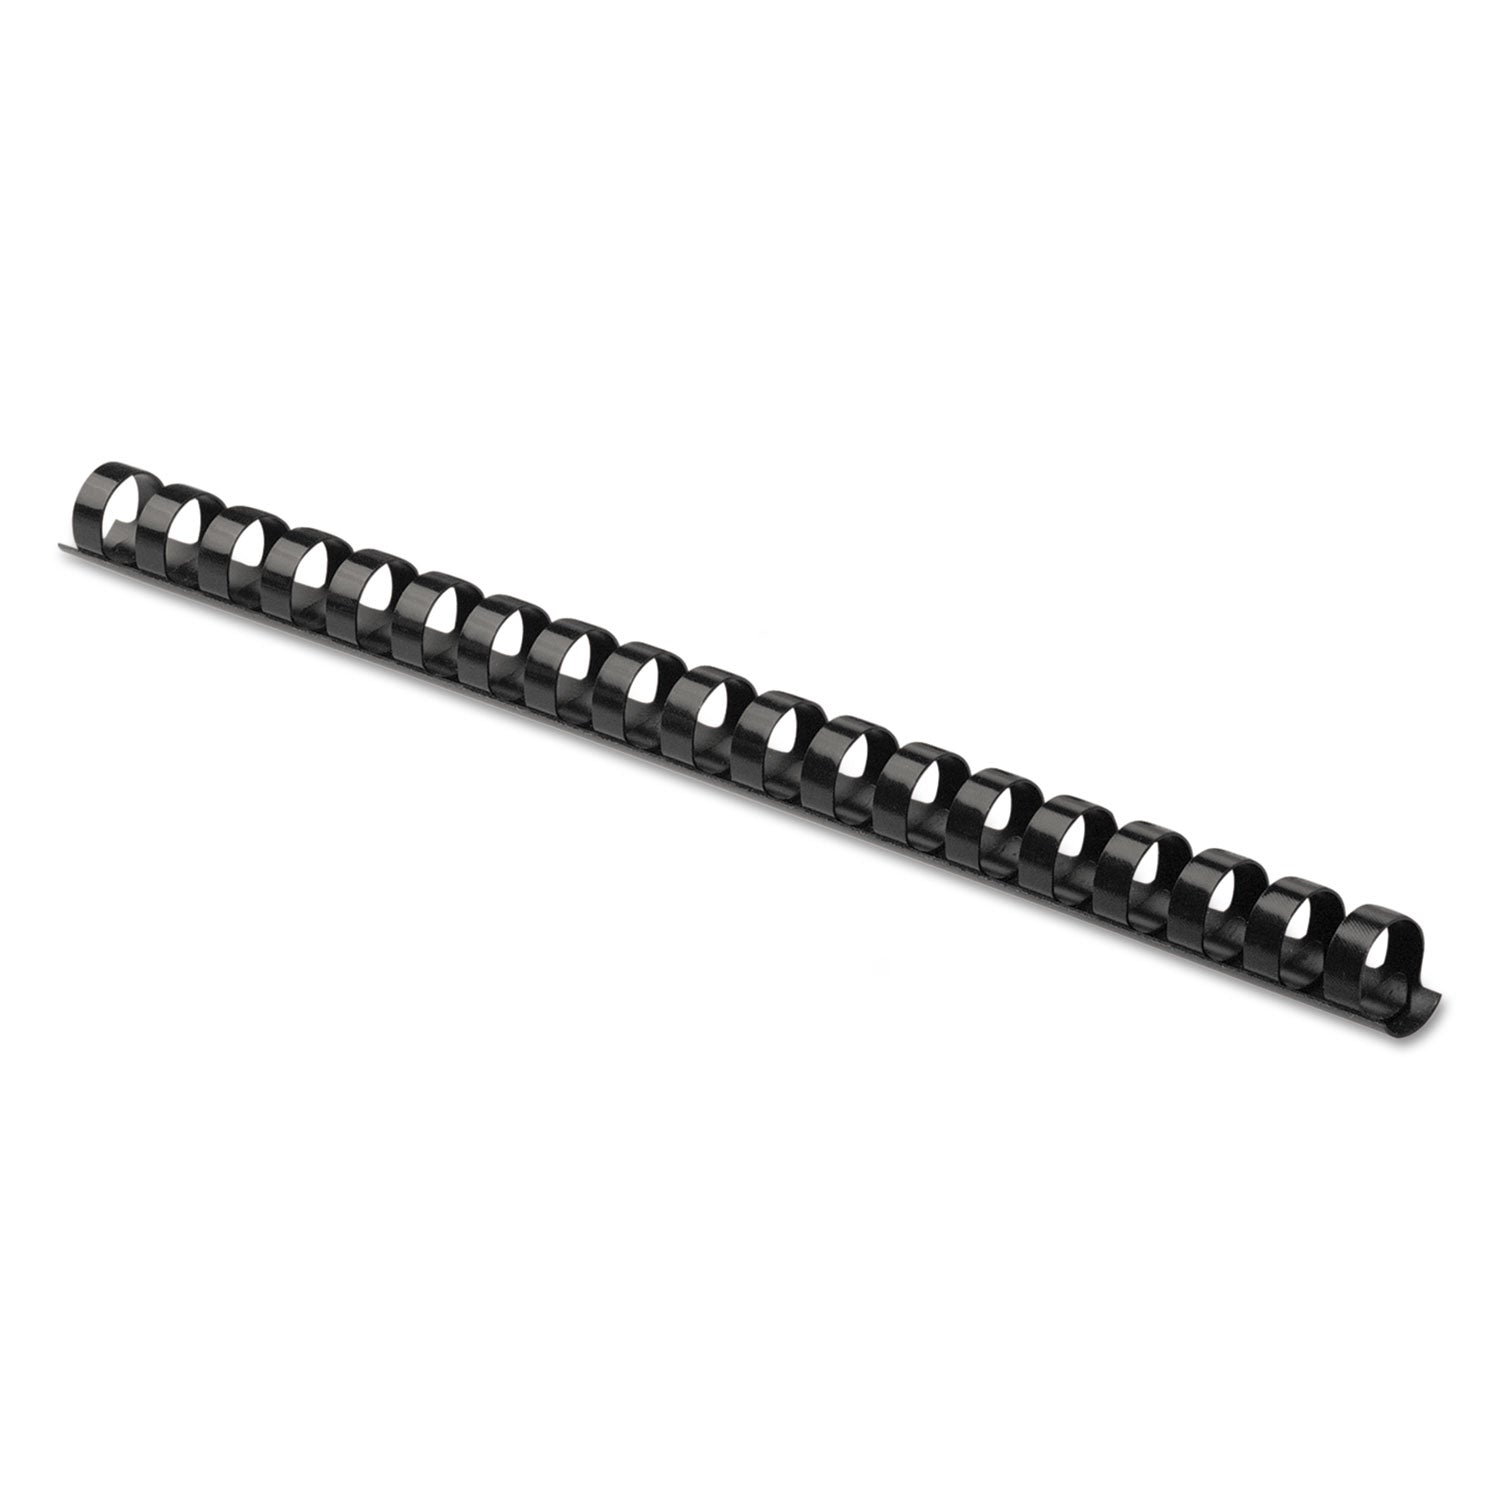 Plastic Comb Bindings, 1/2" Diameter, 90 Sheet Capacity, Black, 25/Pack - 